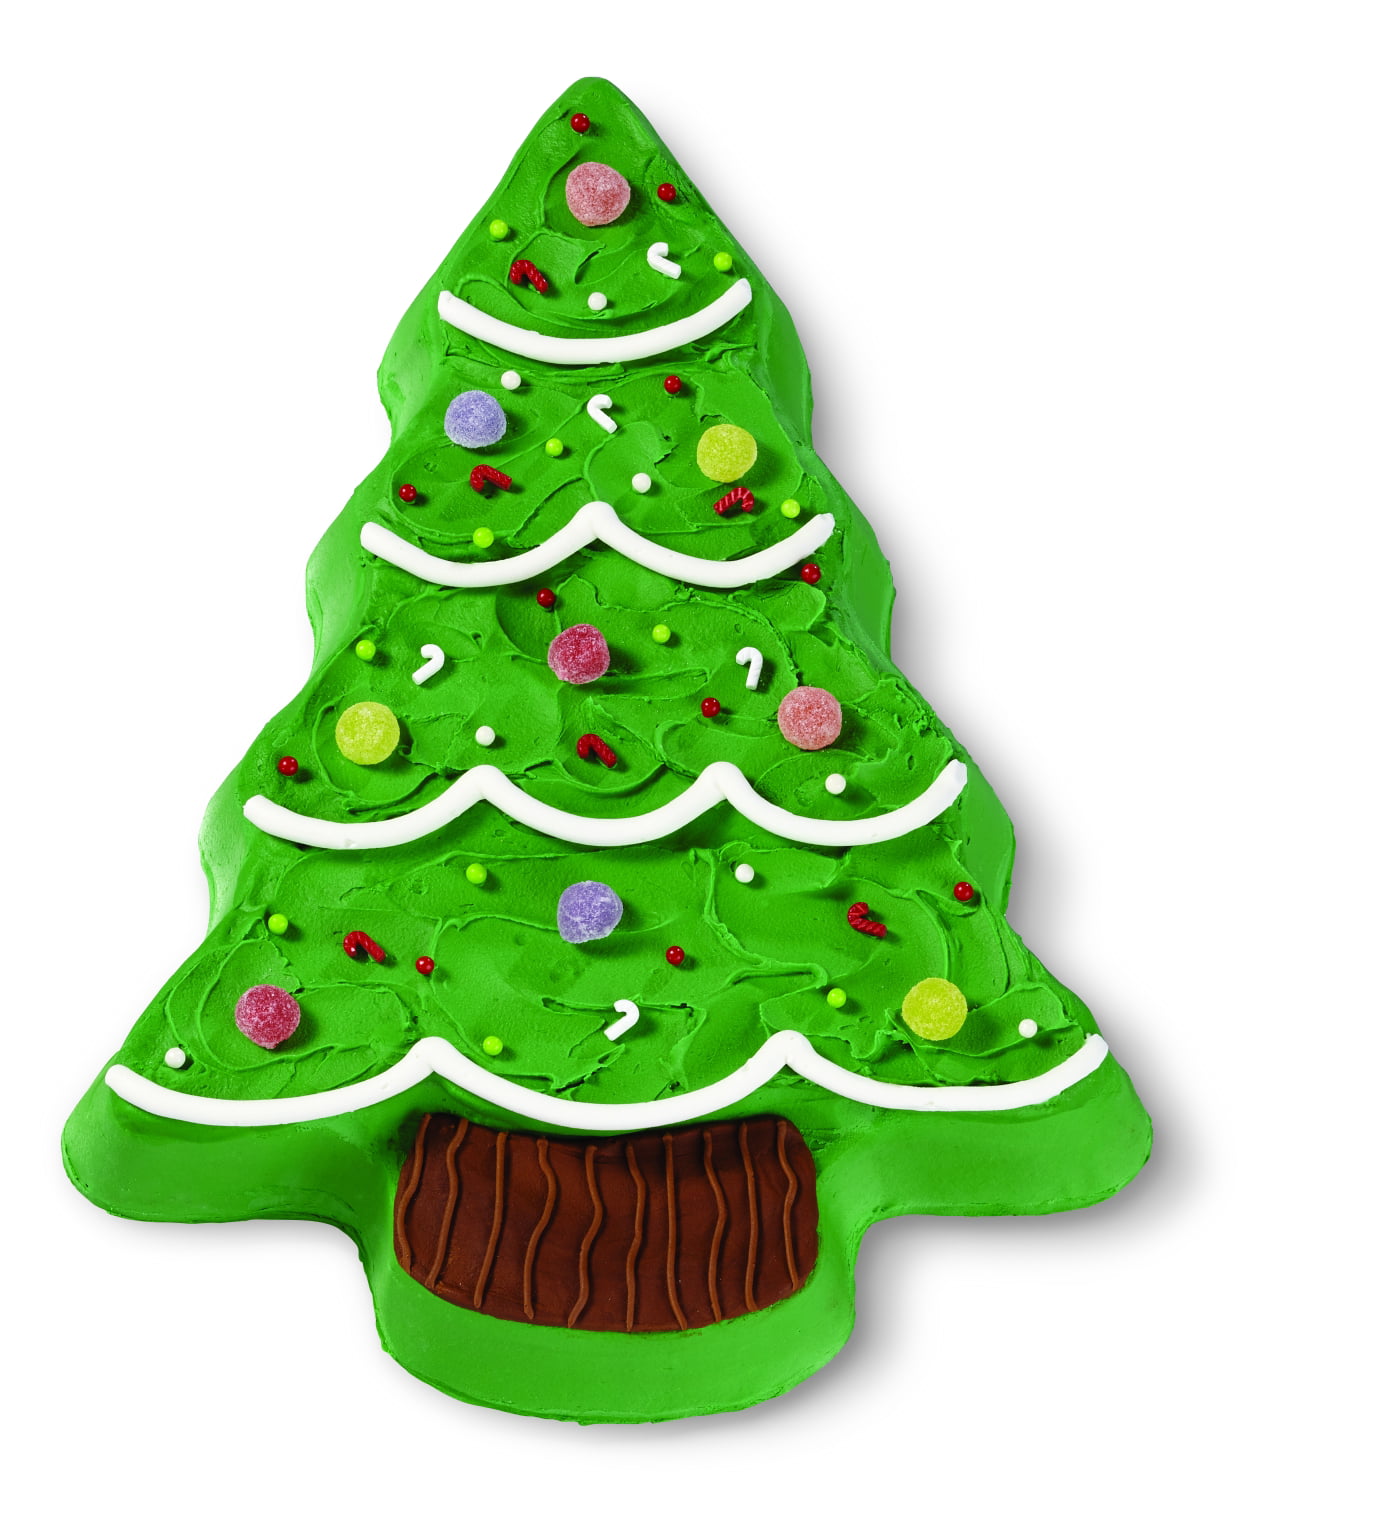 3D CHRISTMAS TREE CAKE PAN - Pergamos